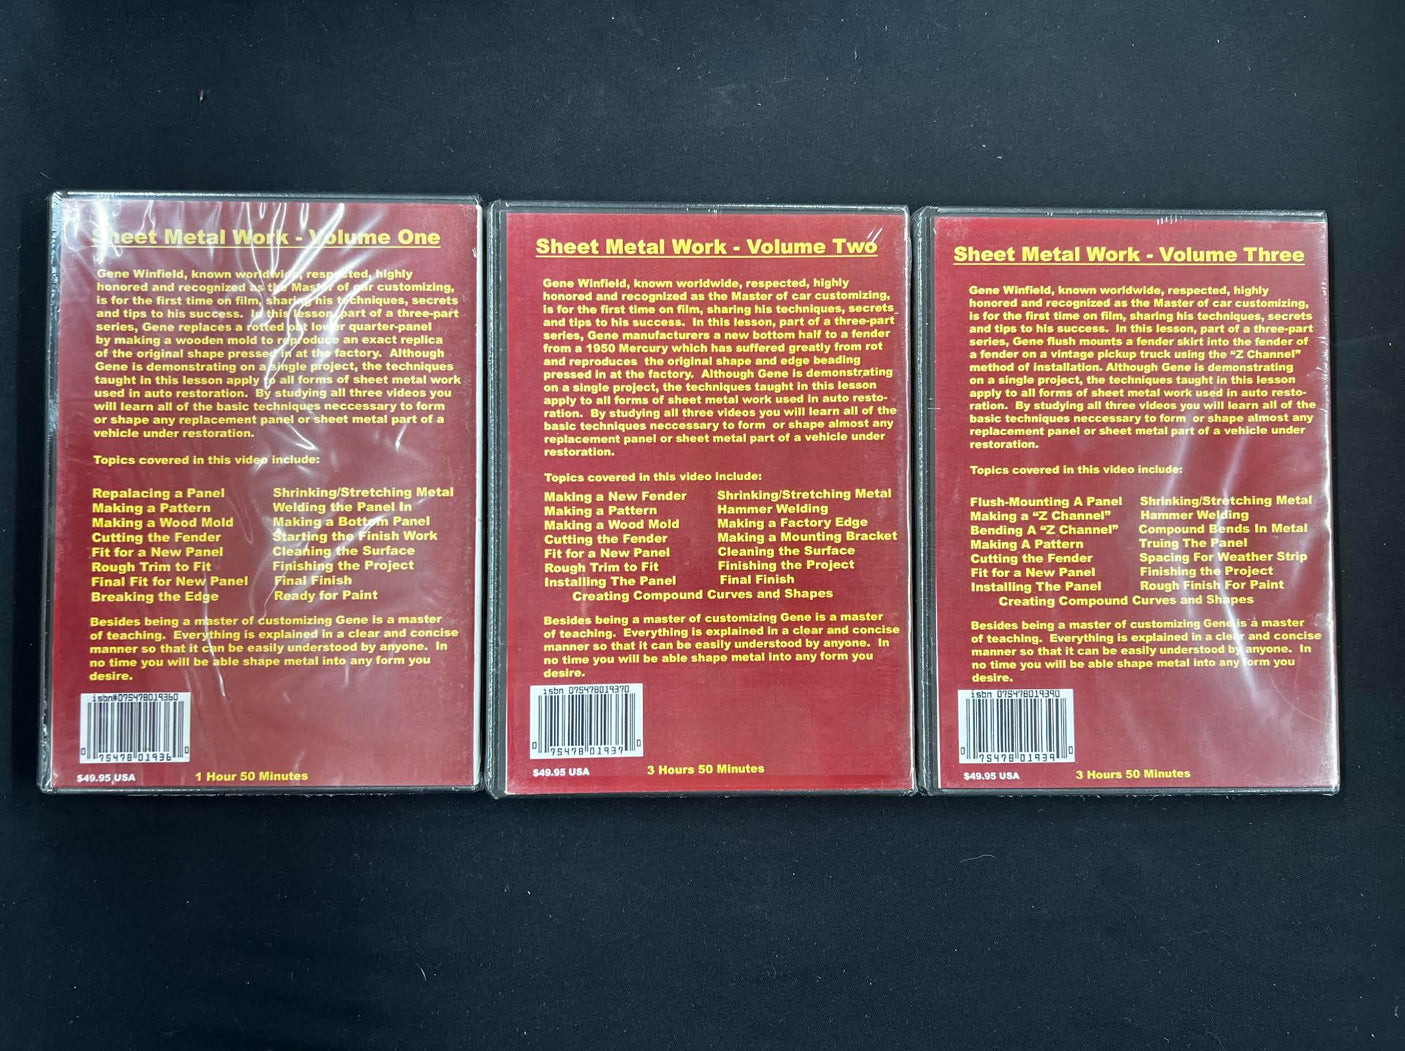 Gene Winfield DVD (3 DVD set)